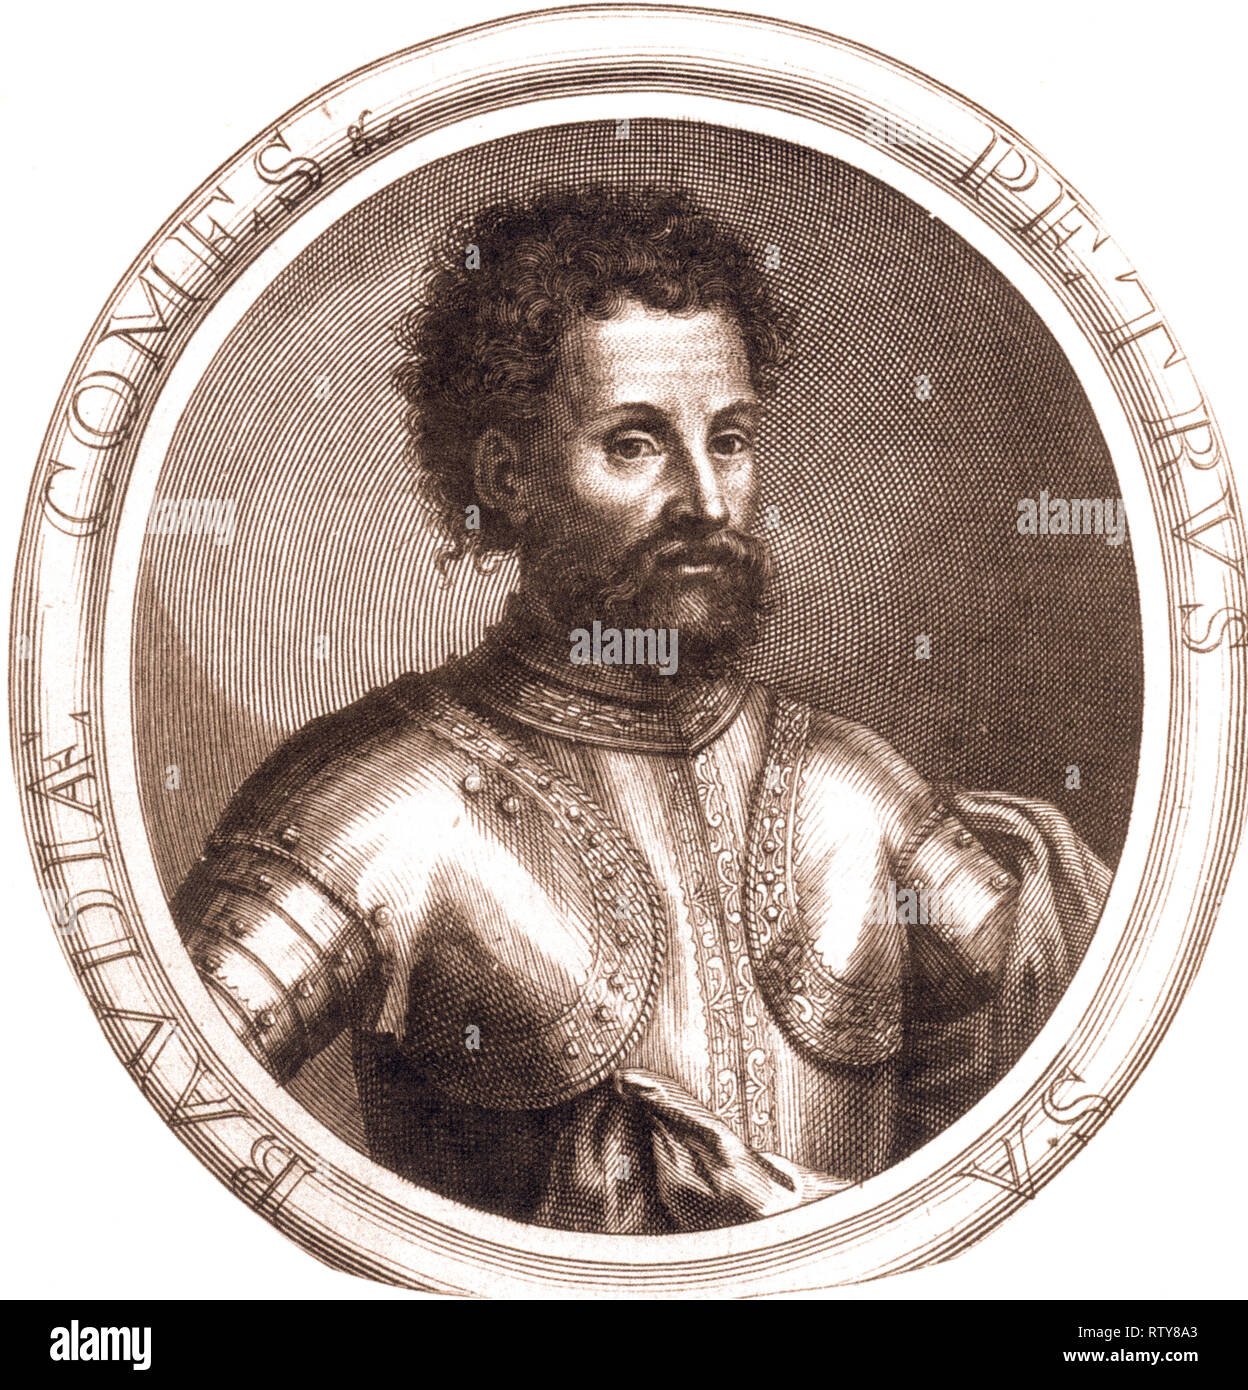 Pedro II de Saboya, llamado Little Carlomagno (Susa, 1203 - Pierre-ChÃ¢tel, 16 de mayo de 1268) fue el conde de Saboya desde 1263 a 1268. También fue Señor de Faucigny (1261-1268) y conde de Richmond (1241), Lord guardián de los cinco puertos (1241). Foto de stock